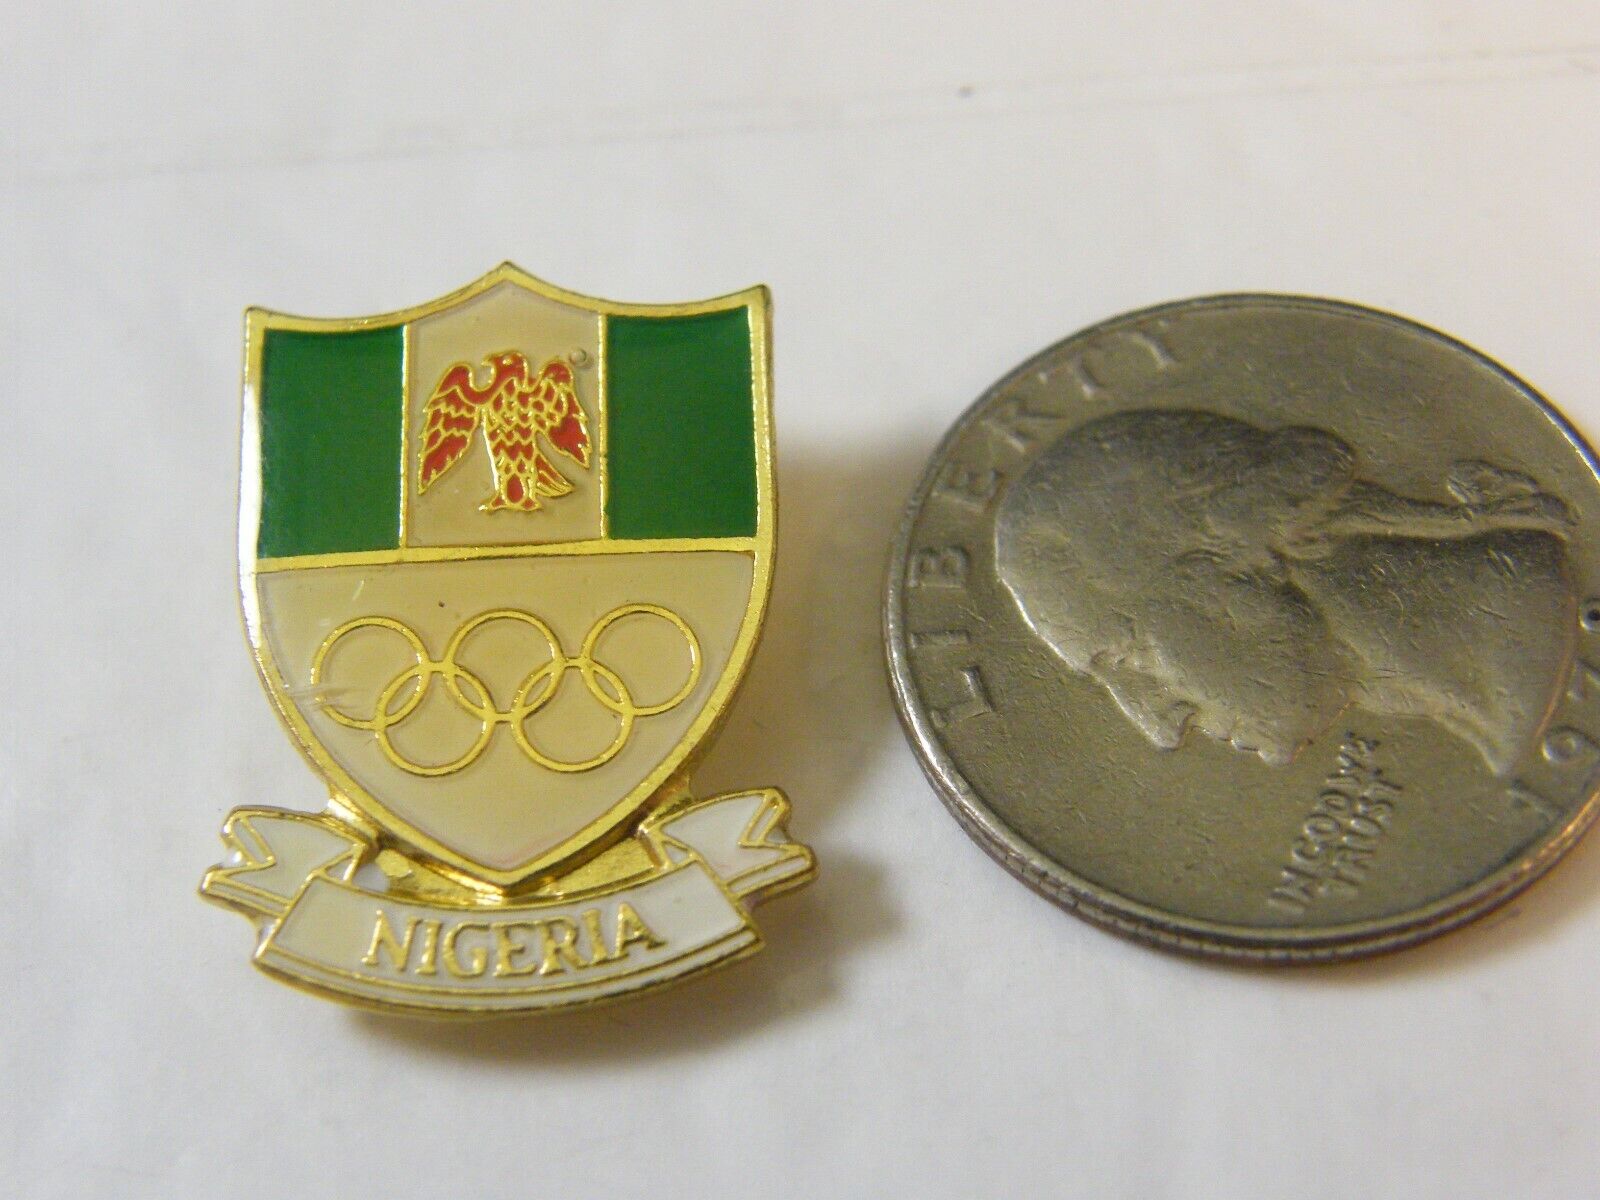 NIGERIA OLYMPIC PIN 